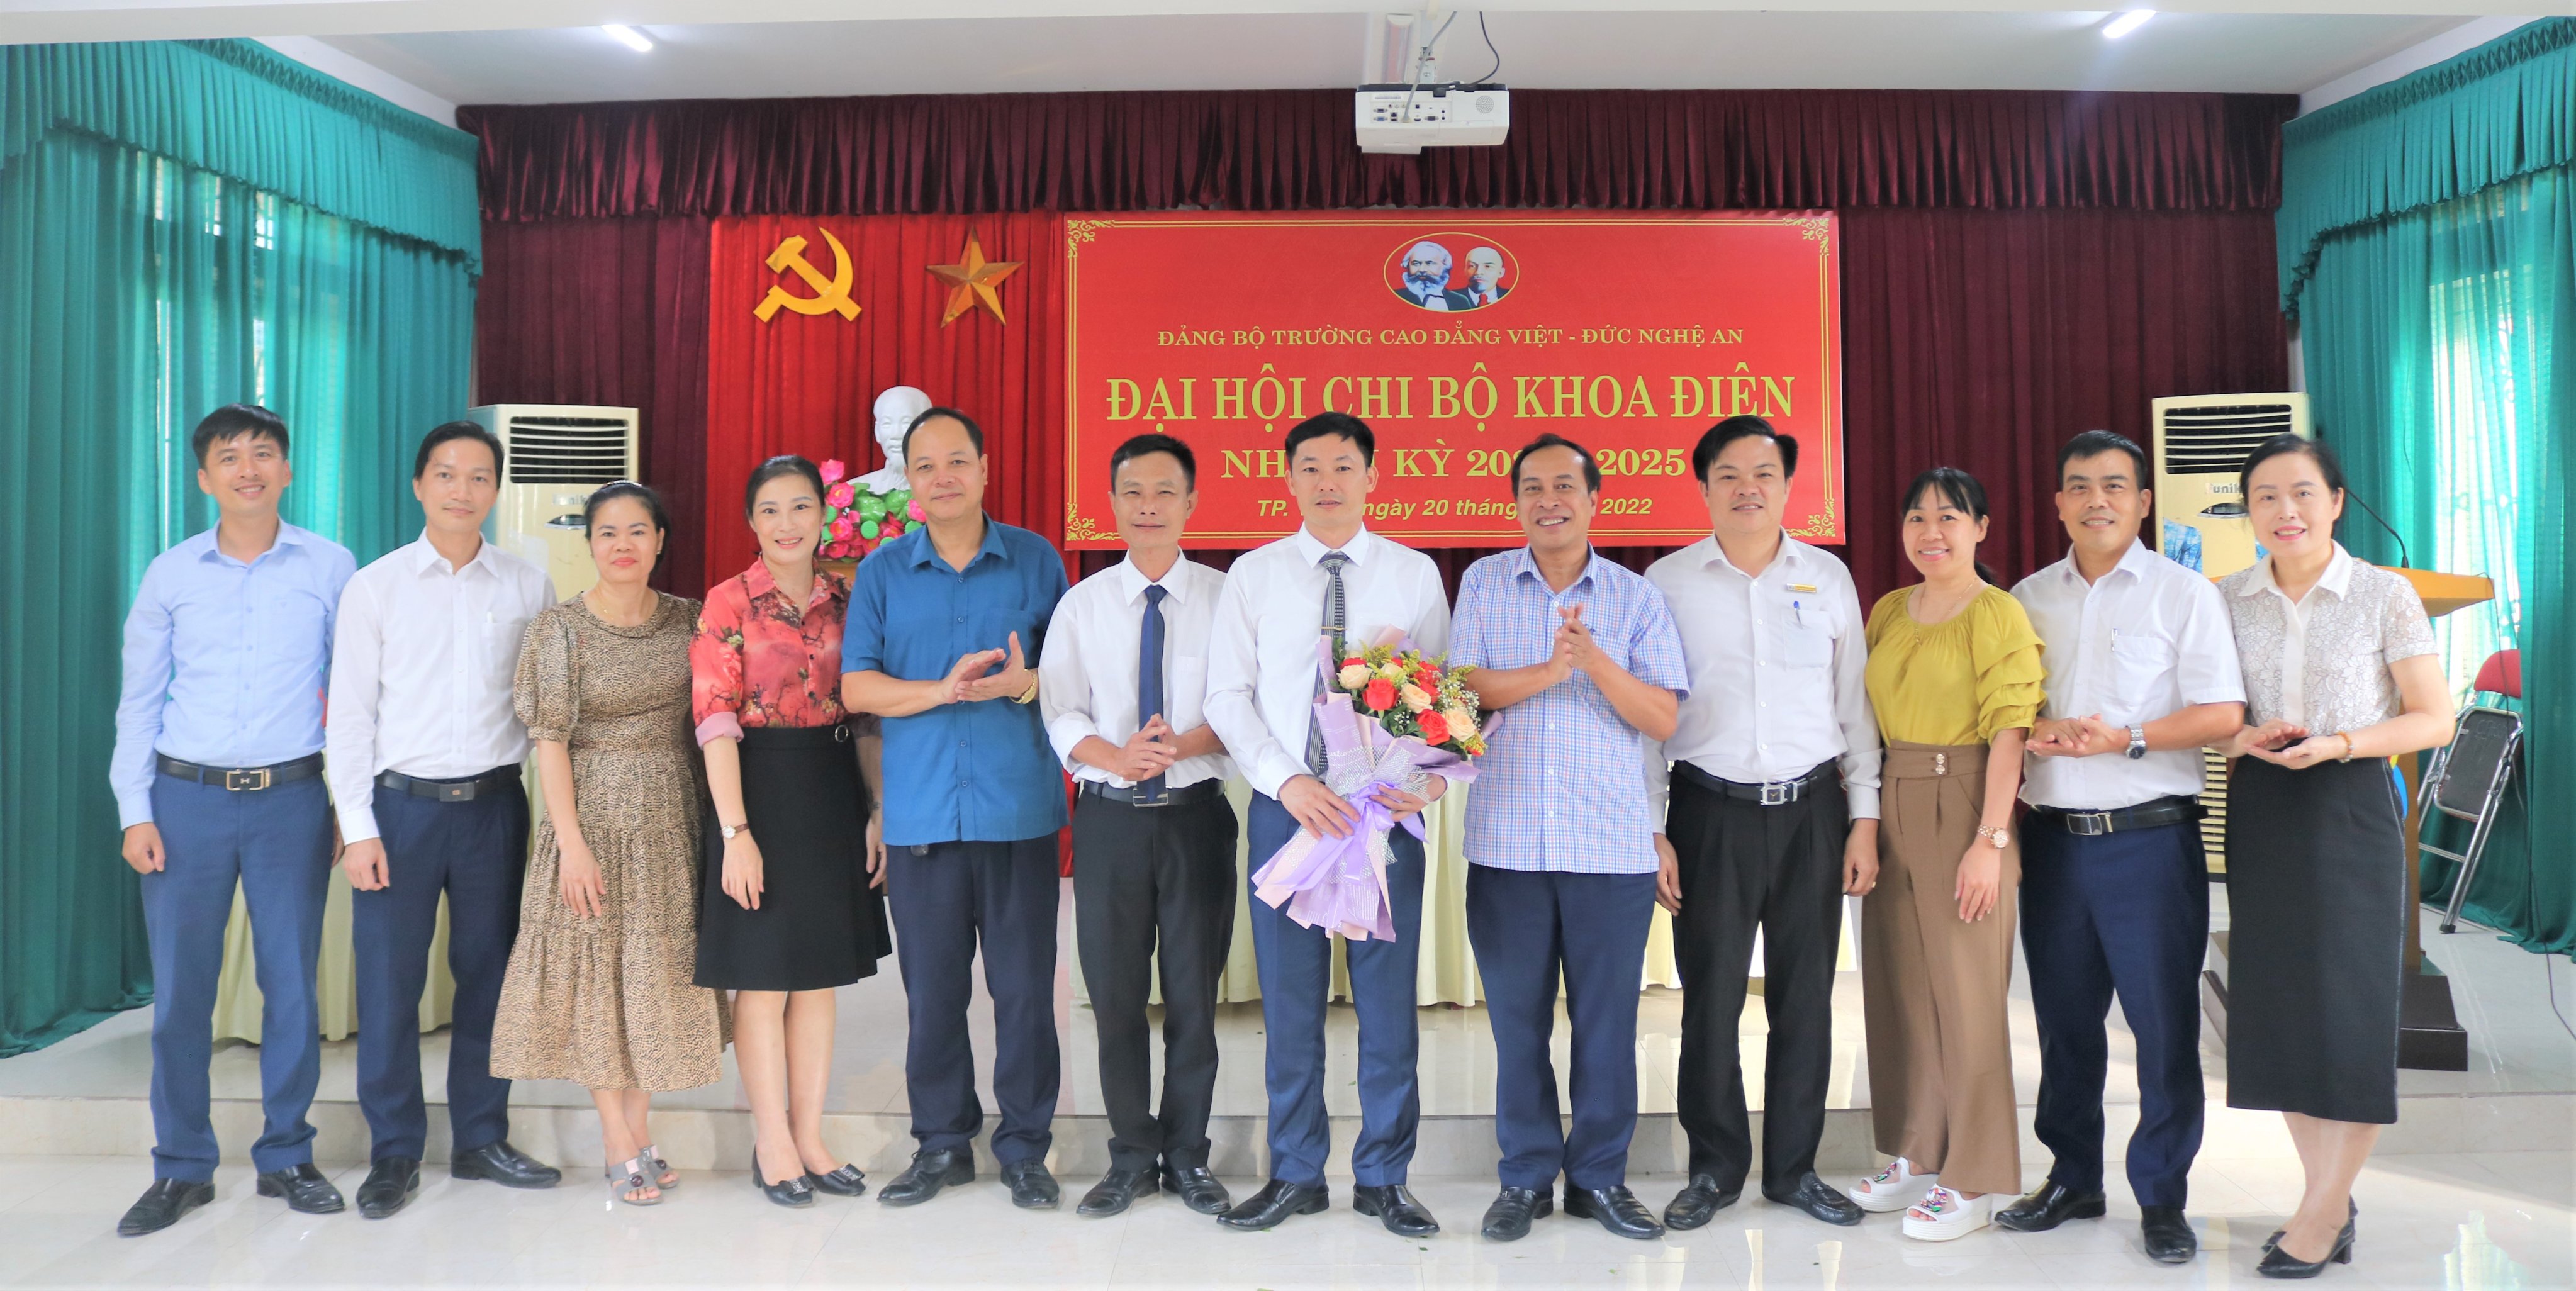 Chi bộ Khoa Điện mở đầu “Tuần Đại hội các chi bộ” trực thuộc Đảng bộ Trường Cao đẳng Việt – Đức Nghệ An, nhiệm kỳ 2022 – 2025